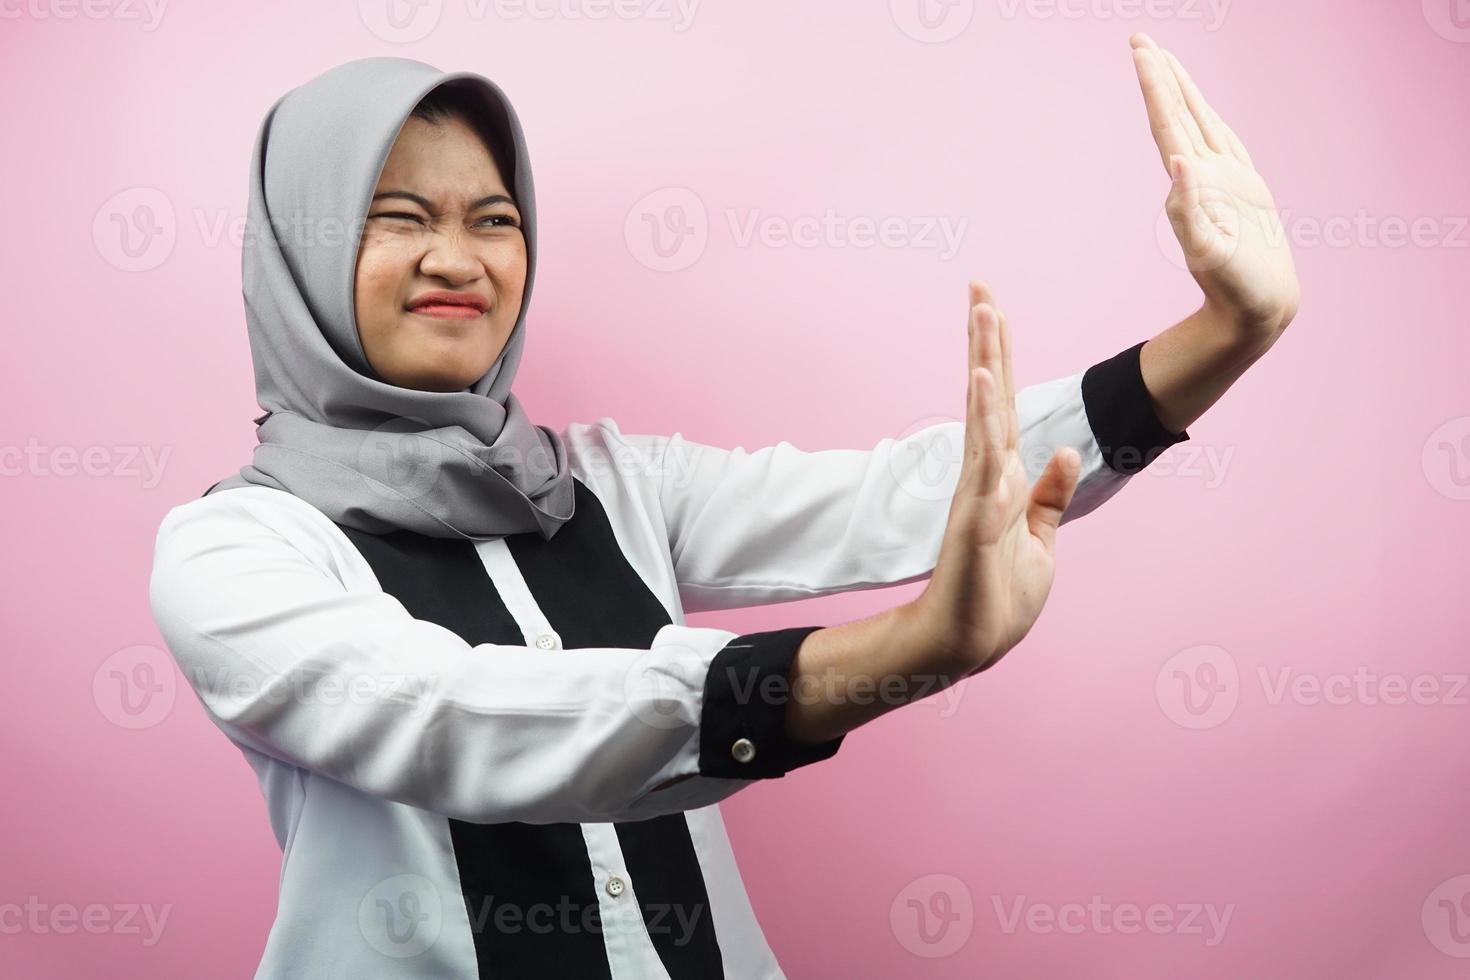 mooie aziatische jonge moslimvrouw met hand die iets afwijst, hand iets stopt, iets niet leuk vindt in lege ruimte, geïsoleerd op roze achtergrond foto